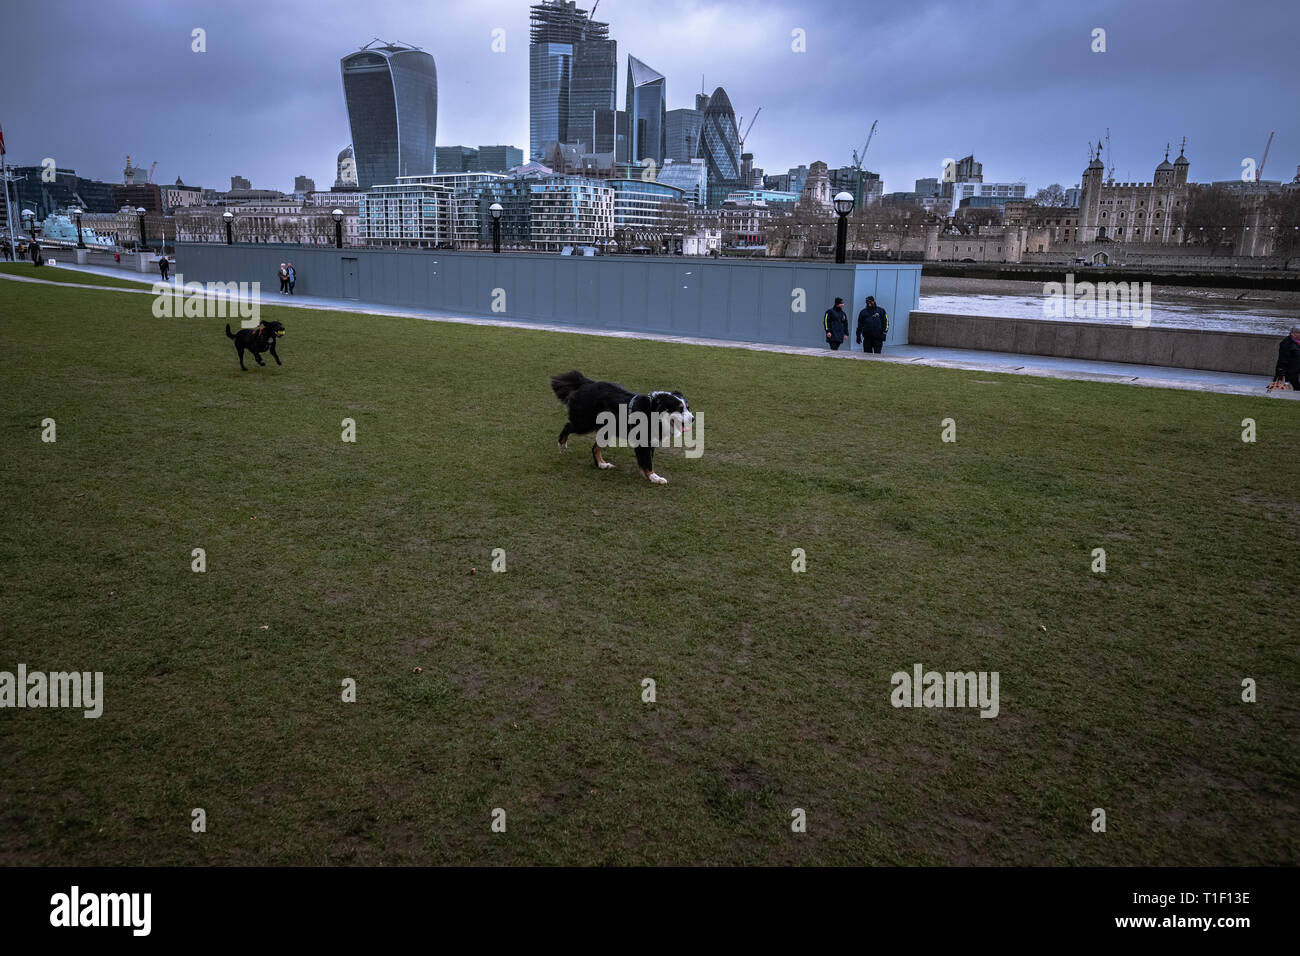 Londra, UK: due cani giocando e recupero di una sfera. Foto Stock